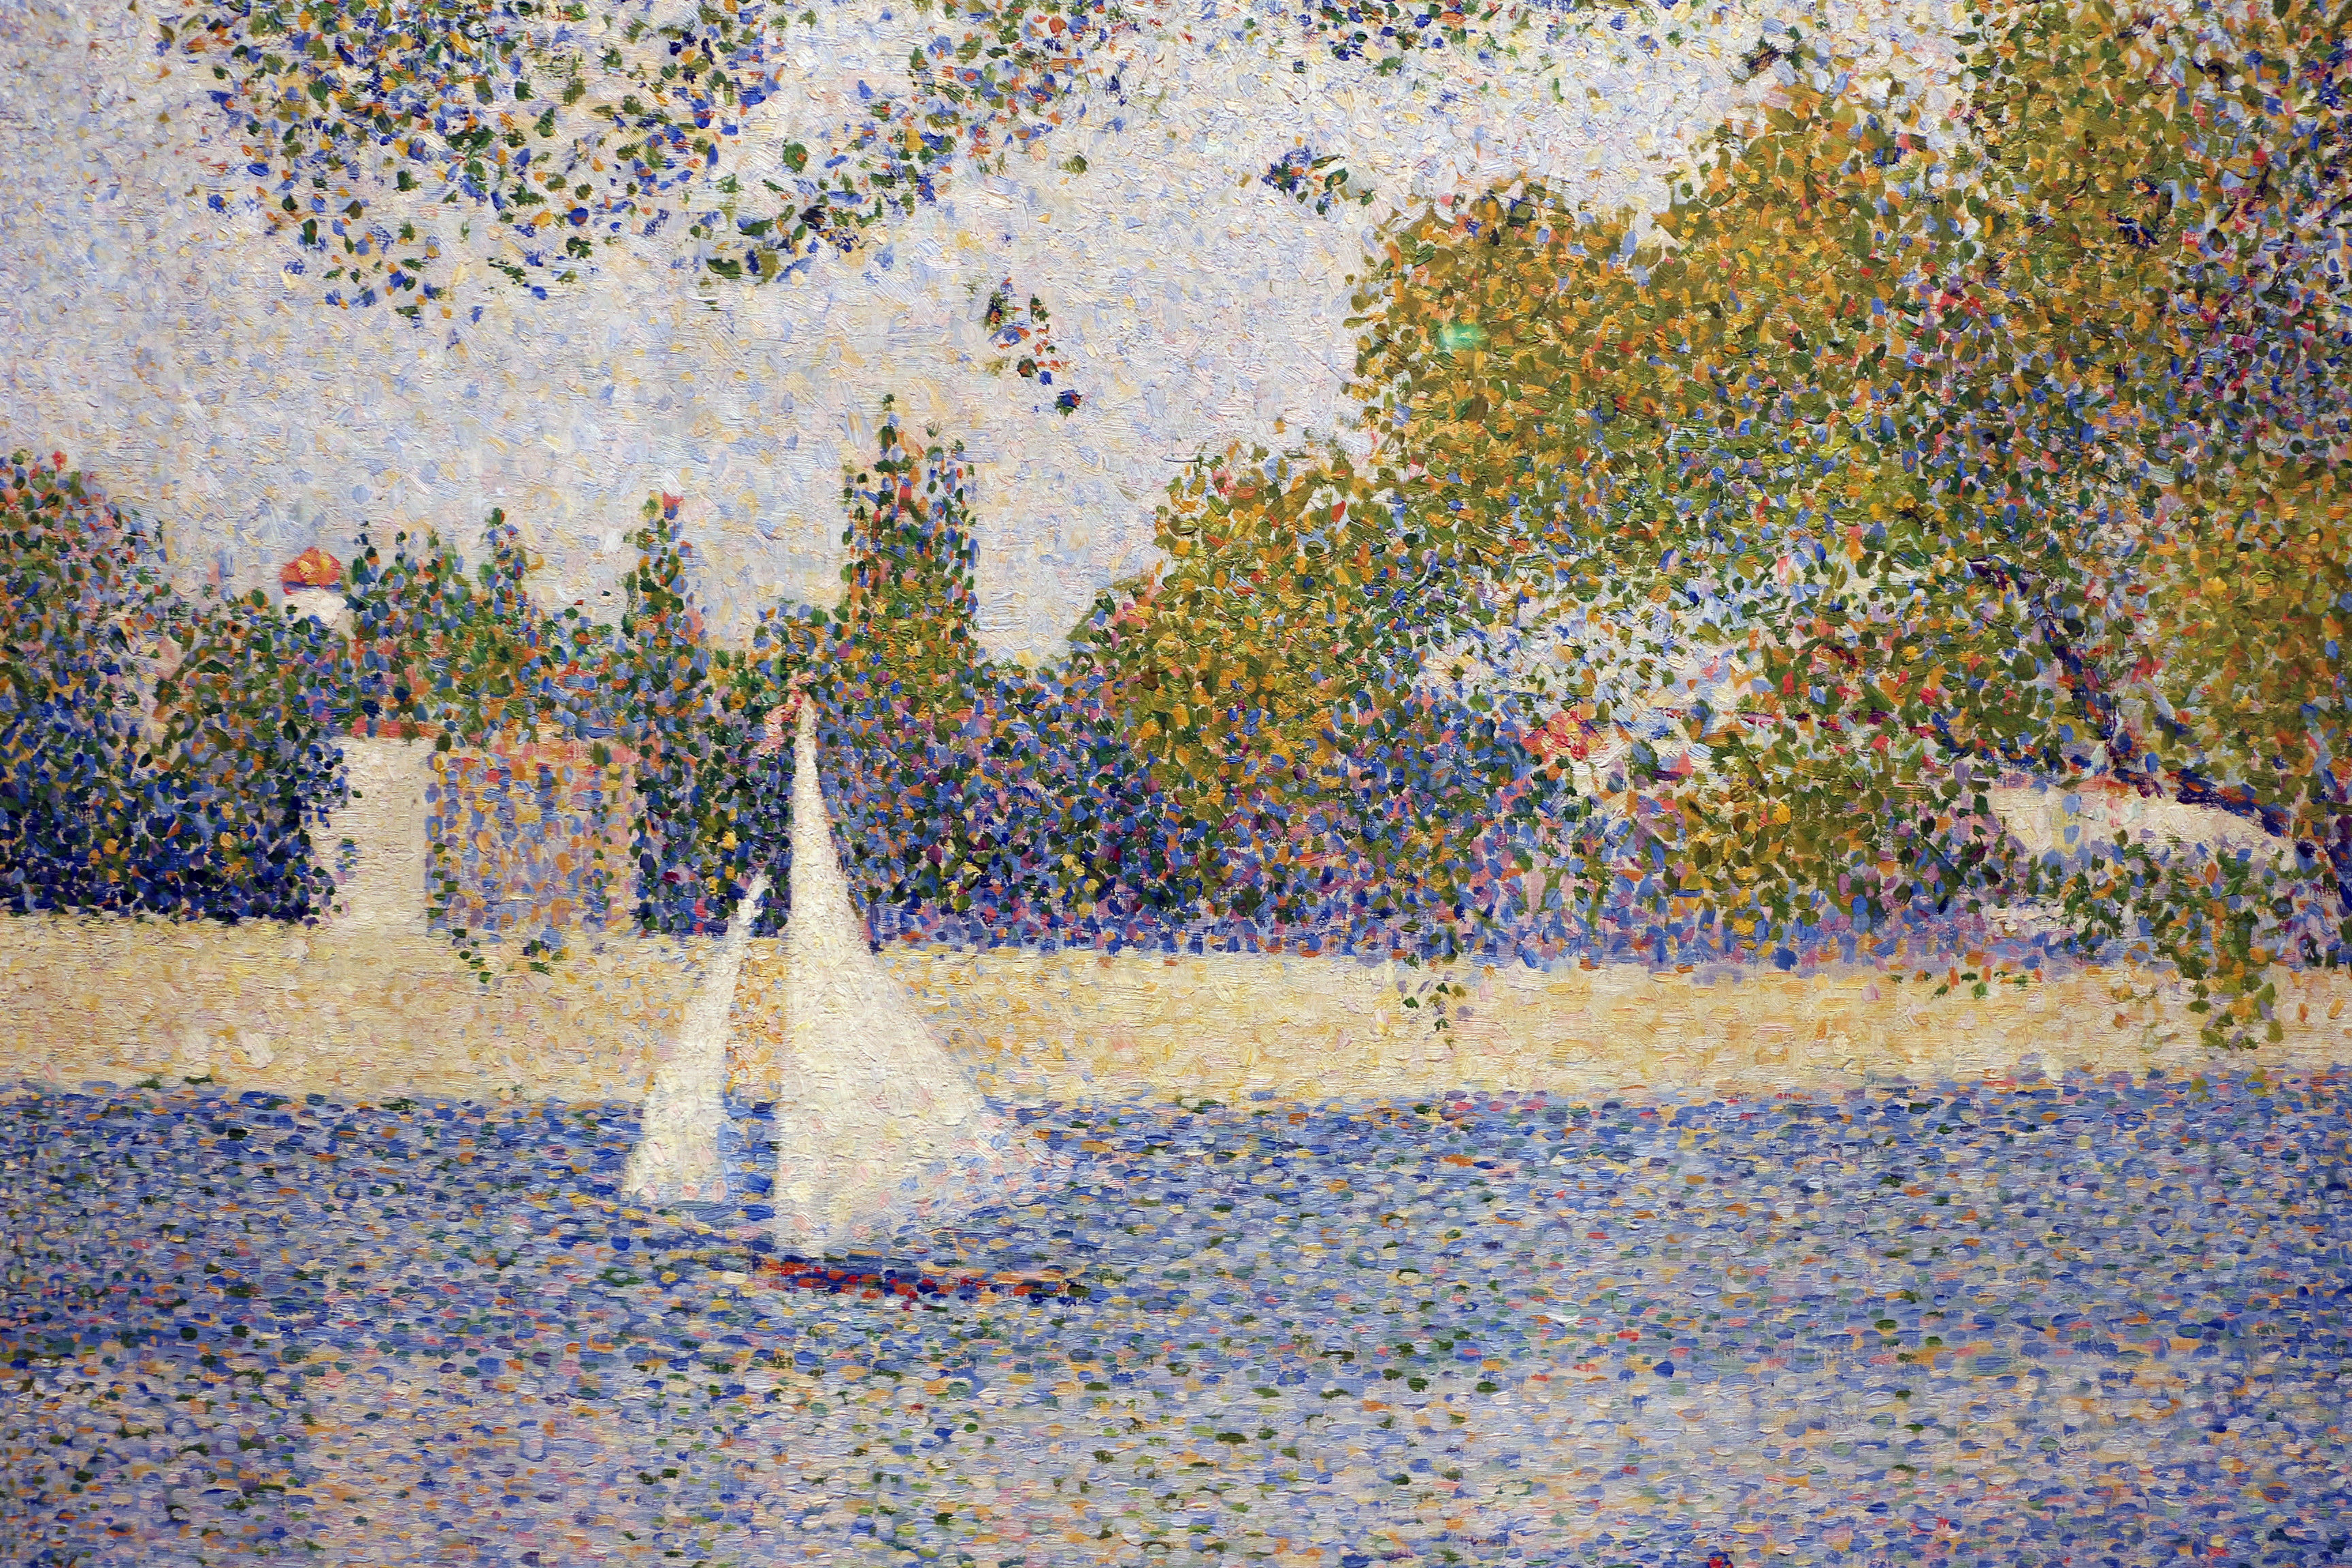 Beginn der abstrakten Kunst mit der pointillistischen Malerei von Georges Seurat (1859–1891) Die Seine an der Grand Jatte Spring 1888